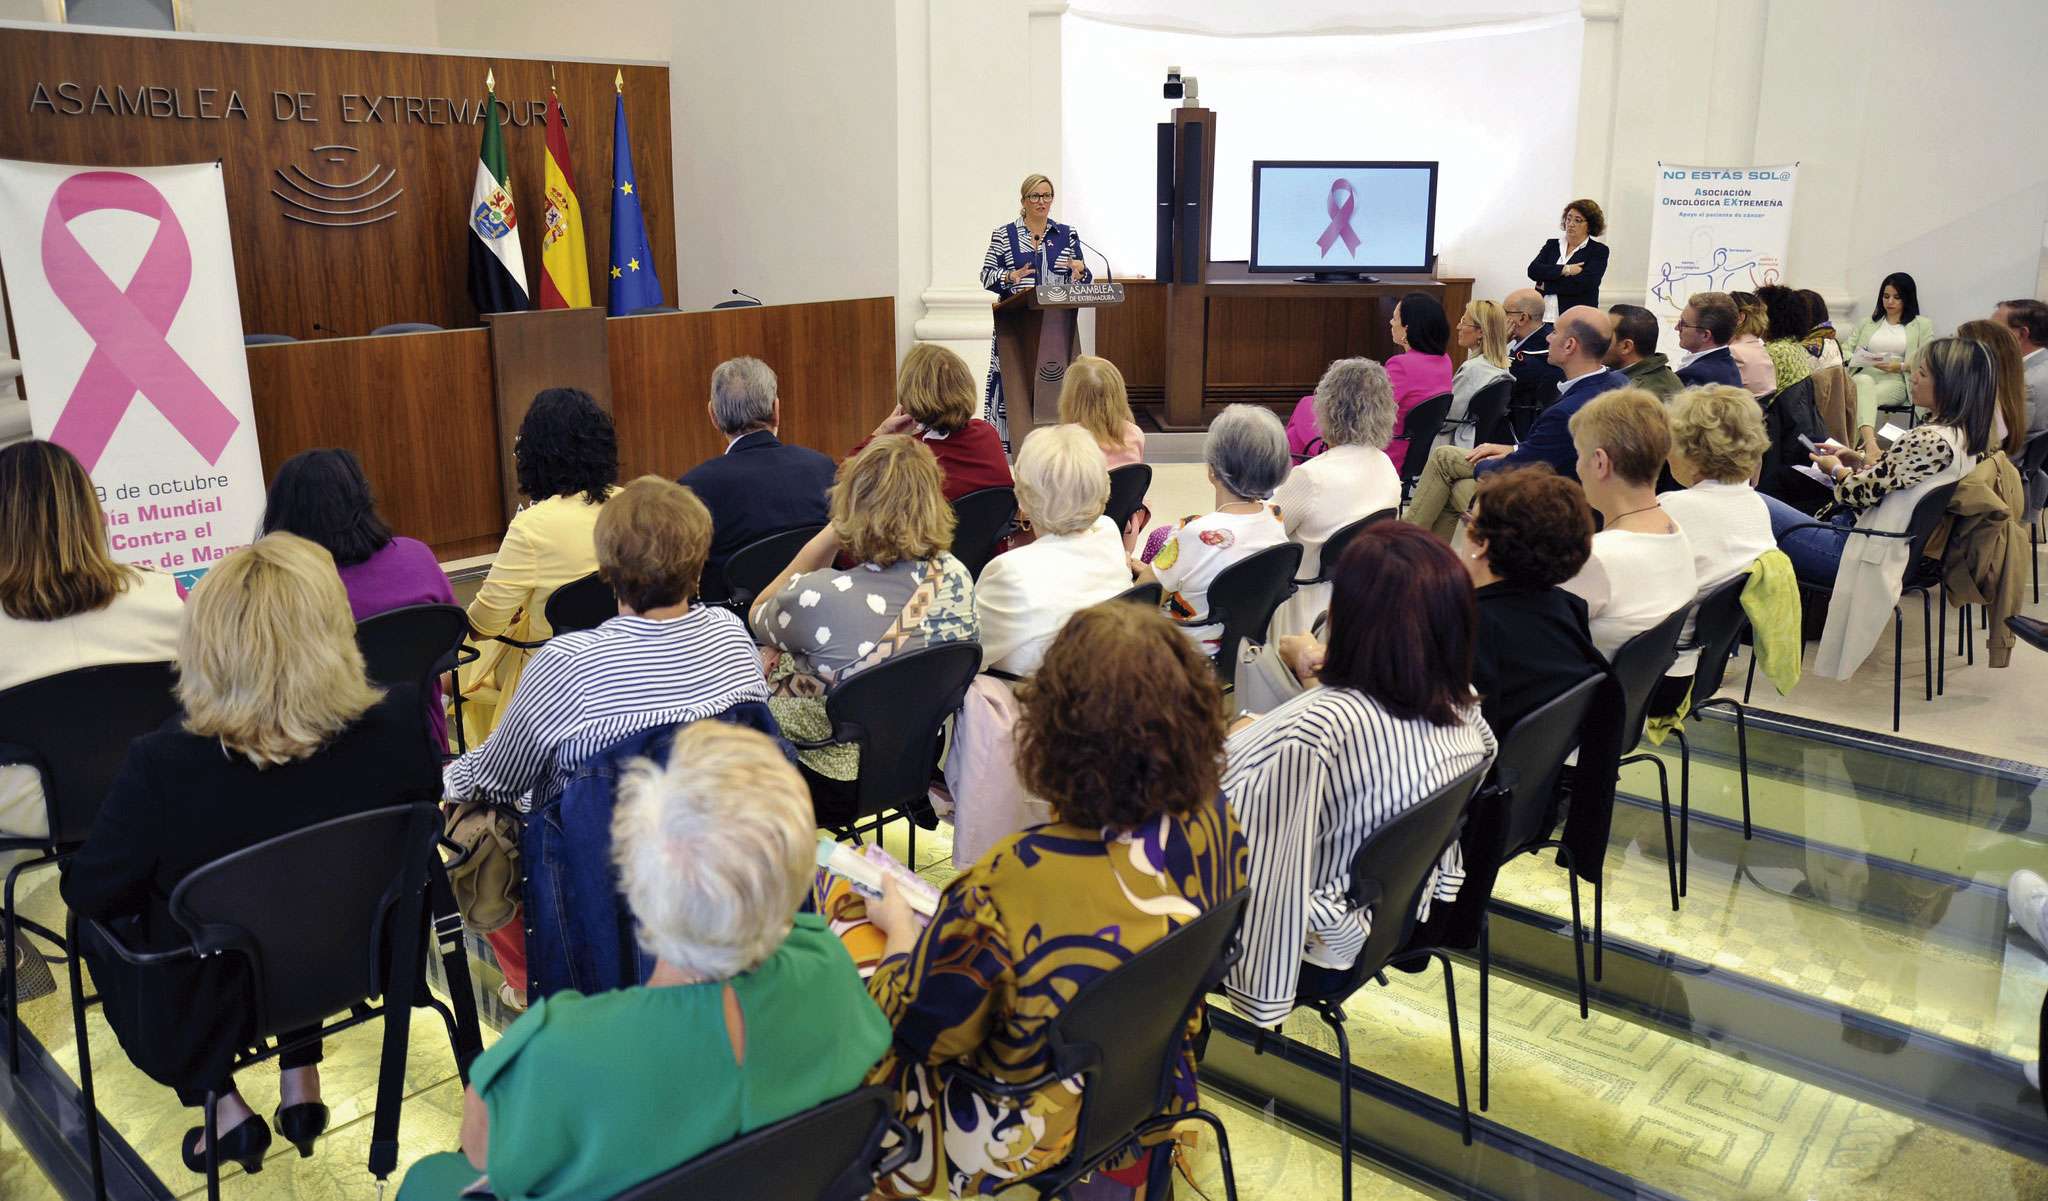 La Asamblea de Extremadura acoge el acto institucional con motivo del Día internacional contra el cáncer de mama